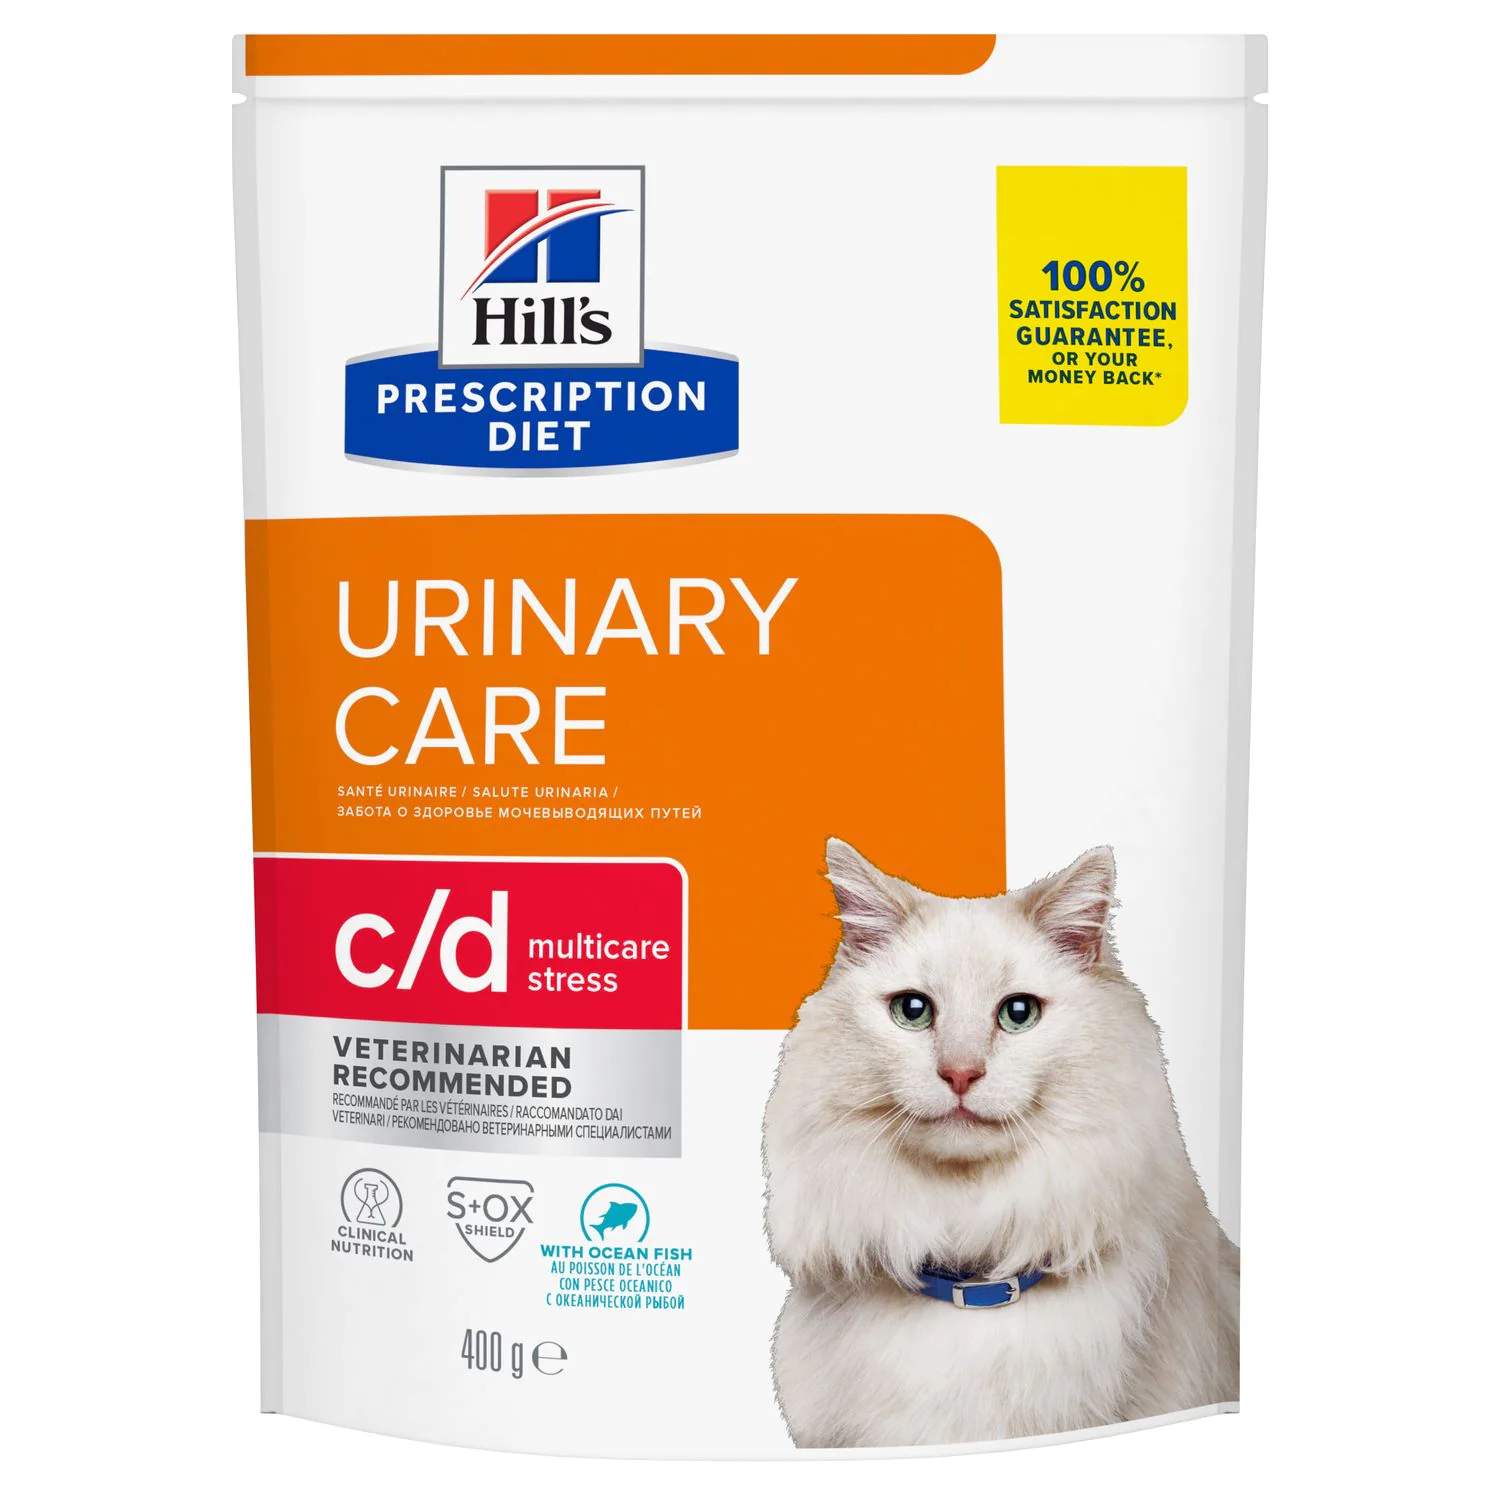 Ветеринарный сухой корм для кошек Hill's (Хиллс) Prescription Diet Urinary Care c/d Multicare Stress, с океанической рыбой